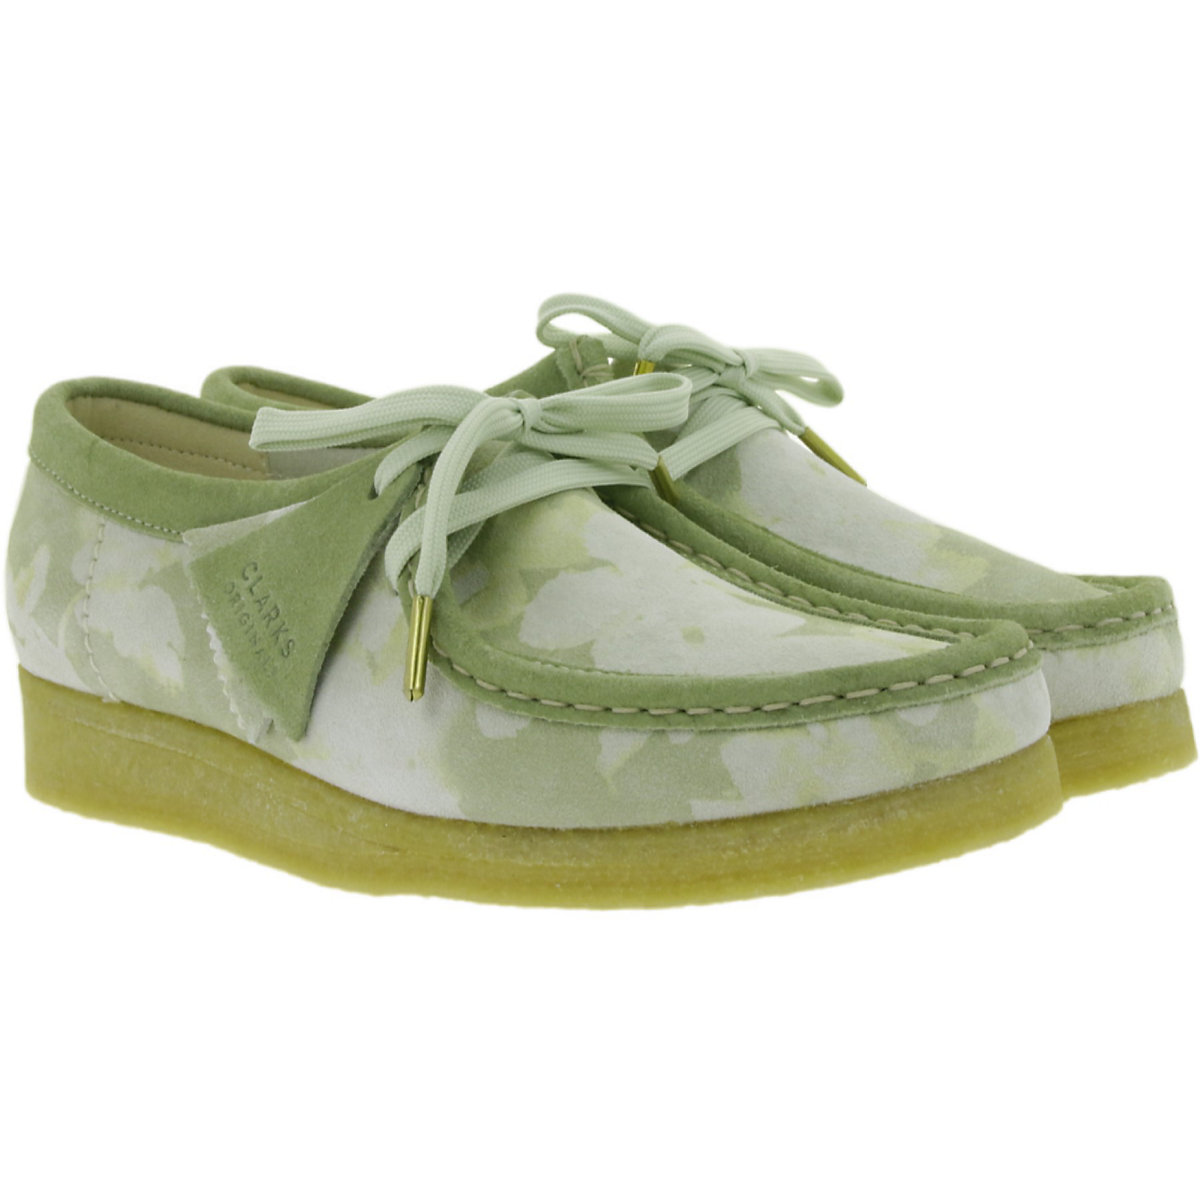 Clarks Schnür-Schuhe grün